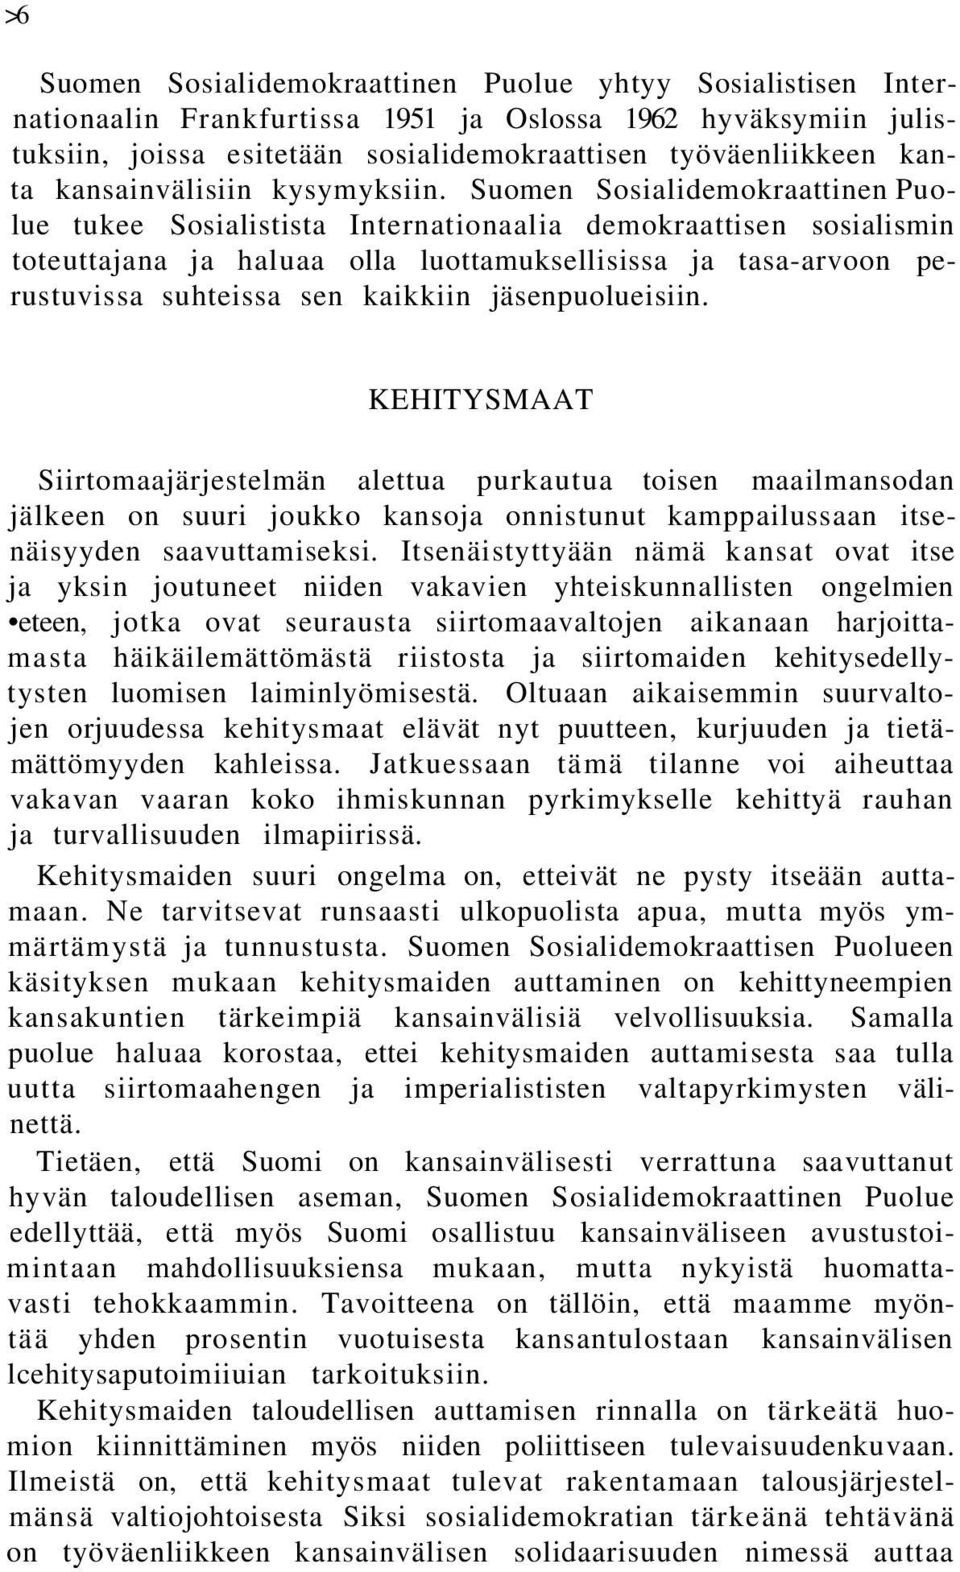 Suomen Sosialidemokraattinen Puolue tukee Sosialistista Internationaalia demokraattisen sosialismin toteuttajana ja haluaa olla luottamuksellisissa ja tasa-arvoon perustuvissa suhteissa sen kaikkiin